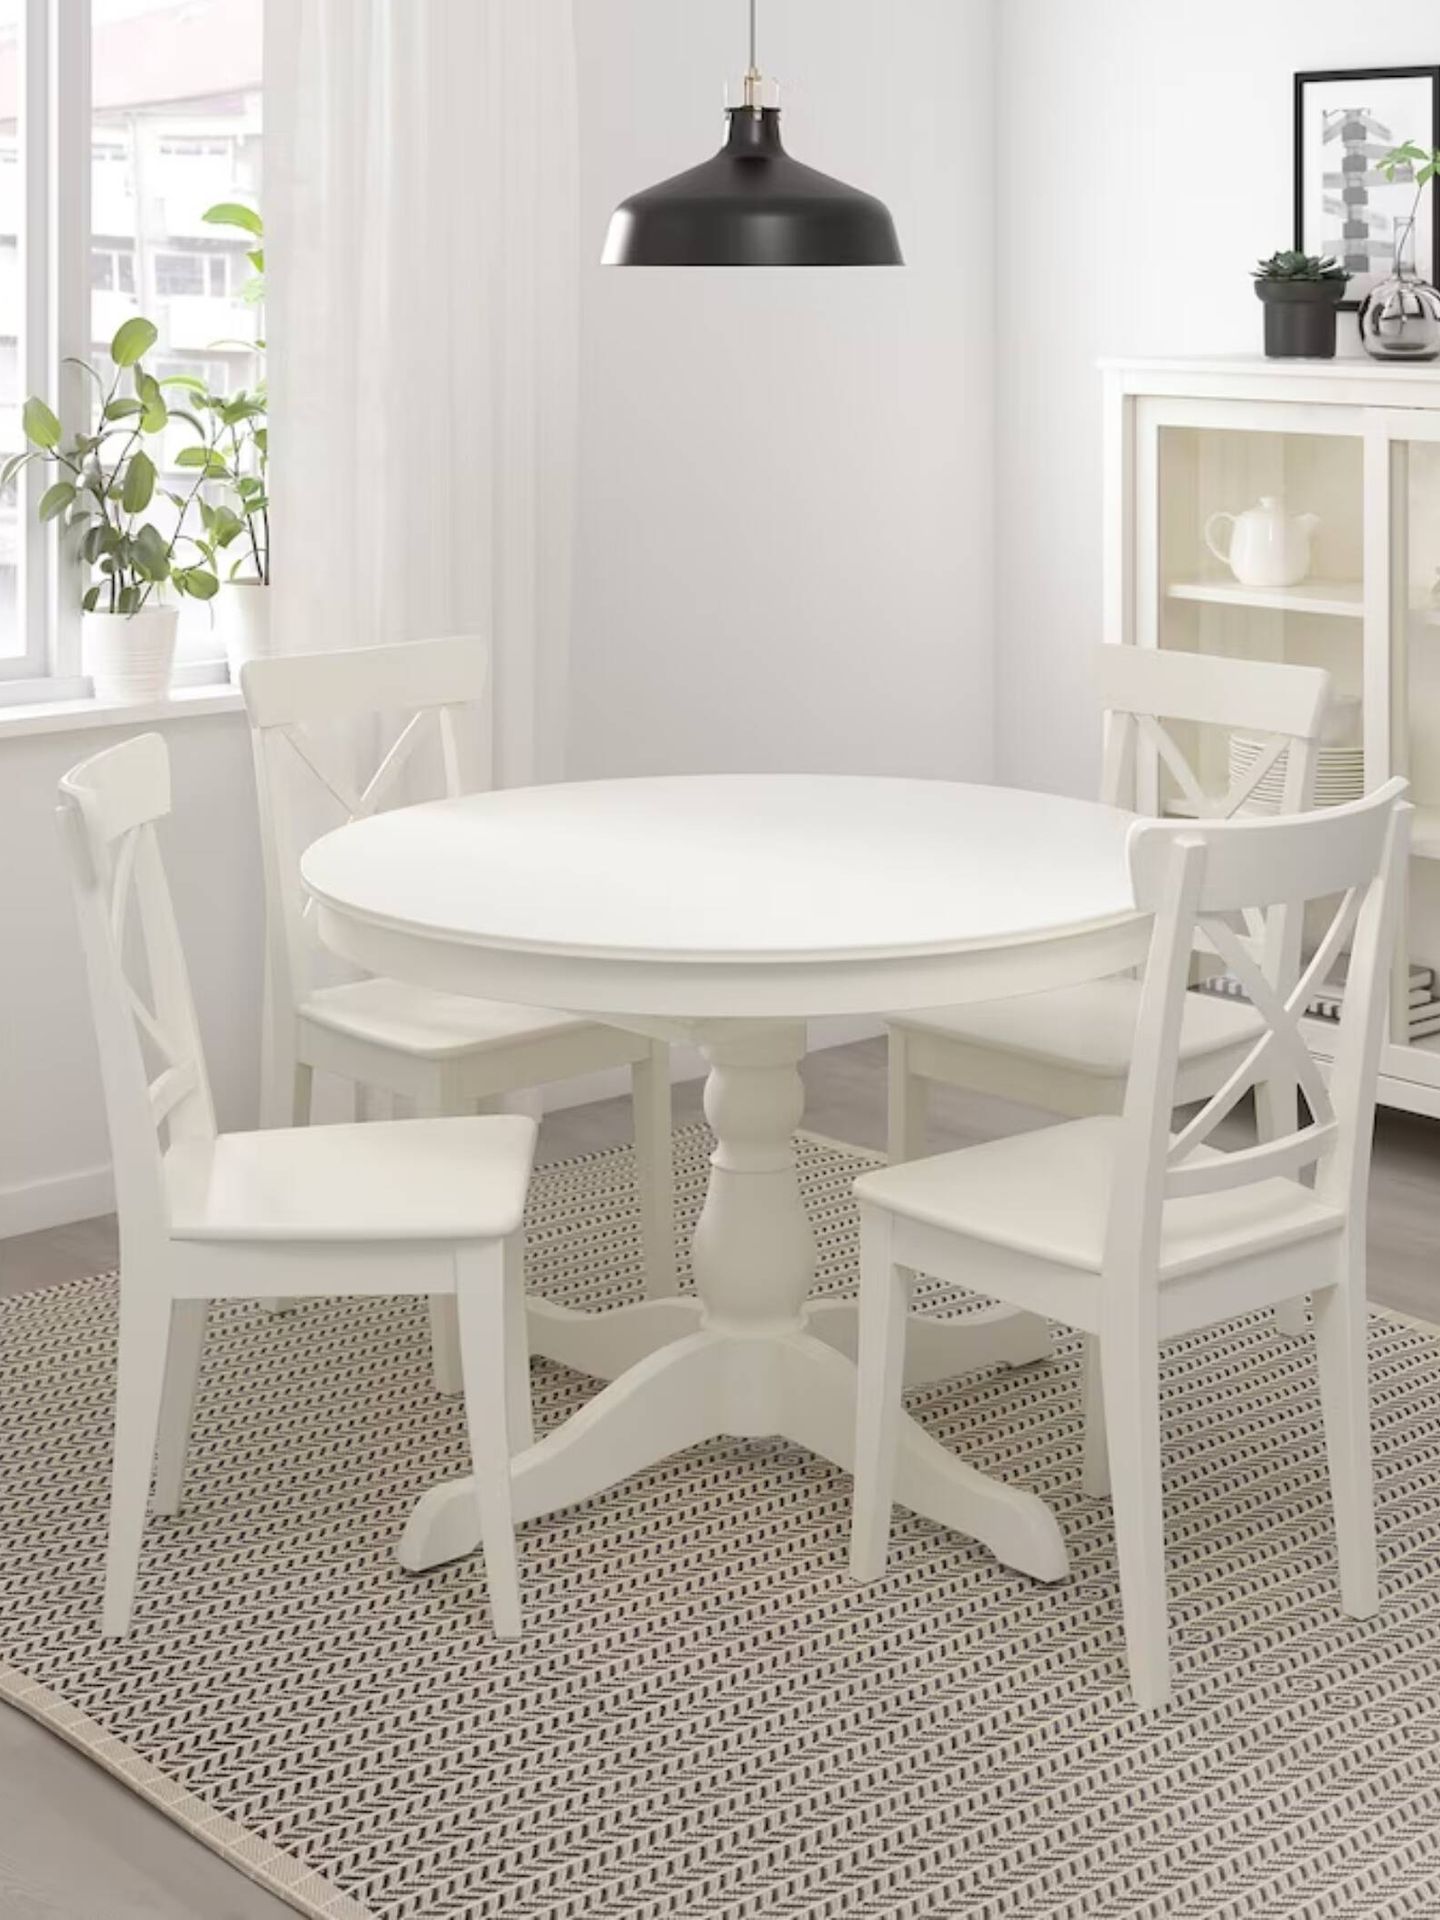 Mesa redonda con molduras en el diseño. (Cortesía/Ikea)